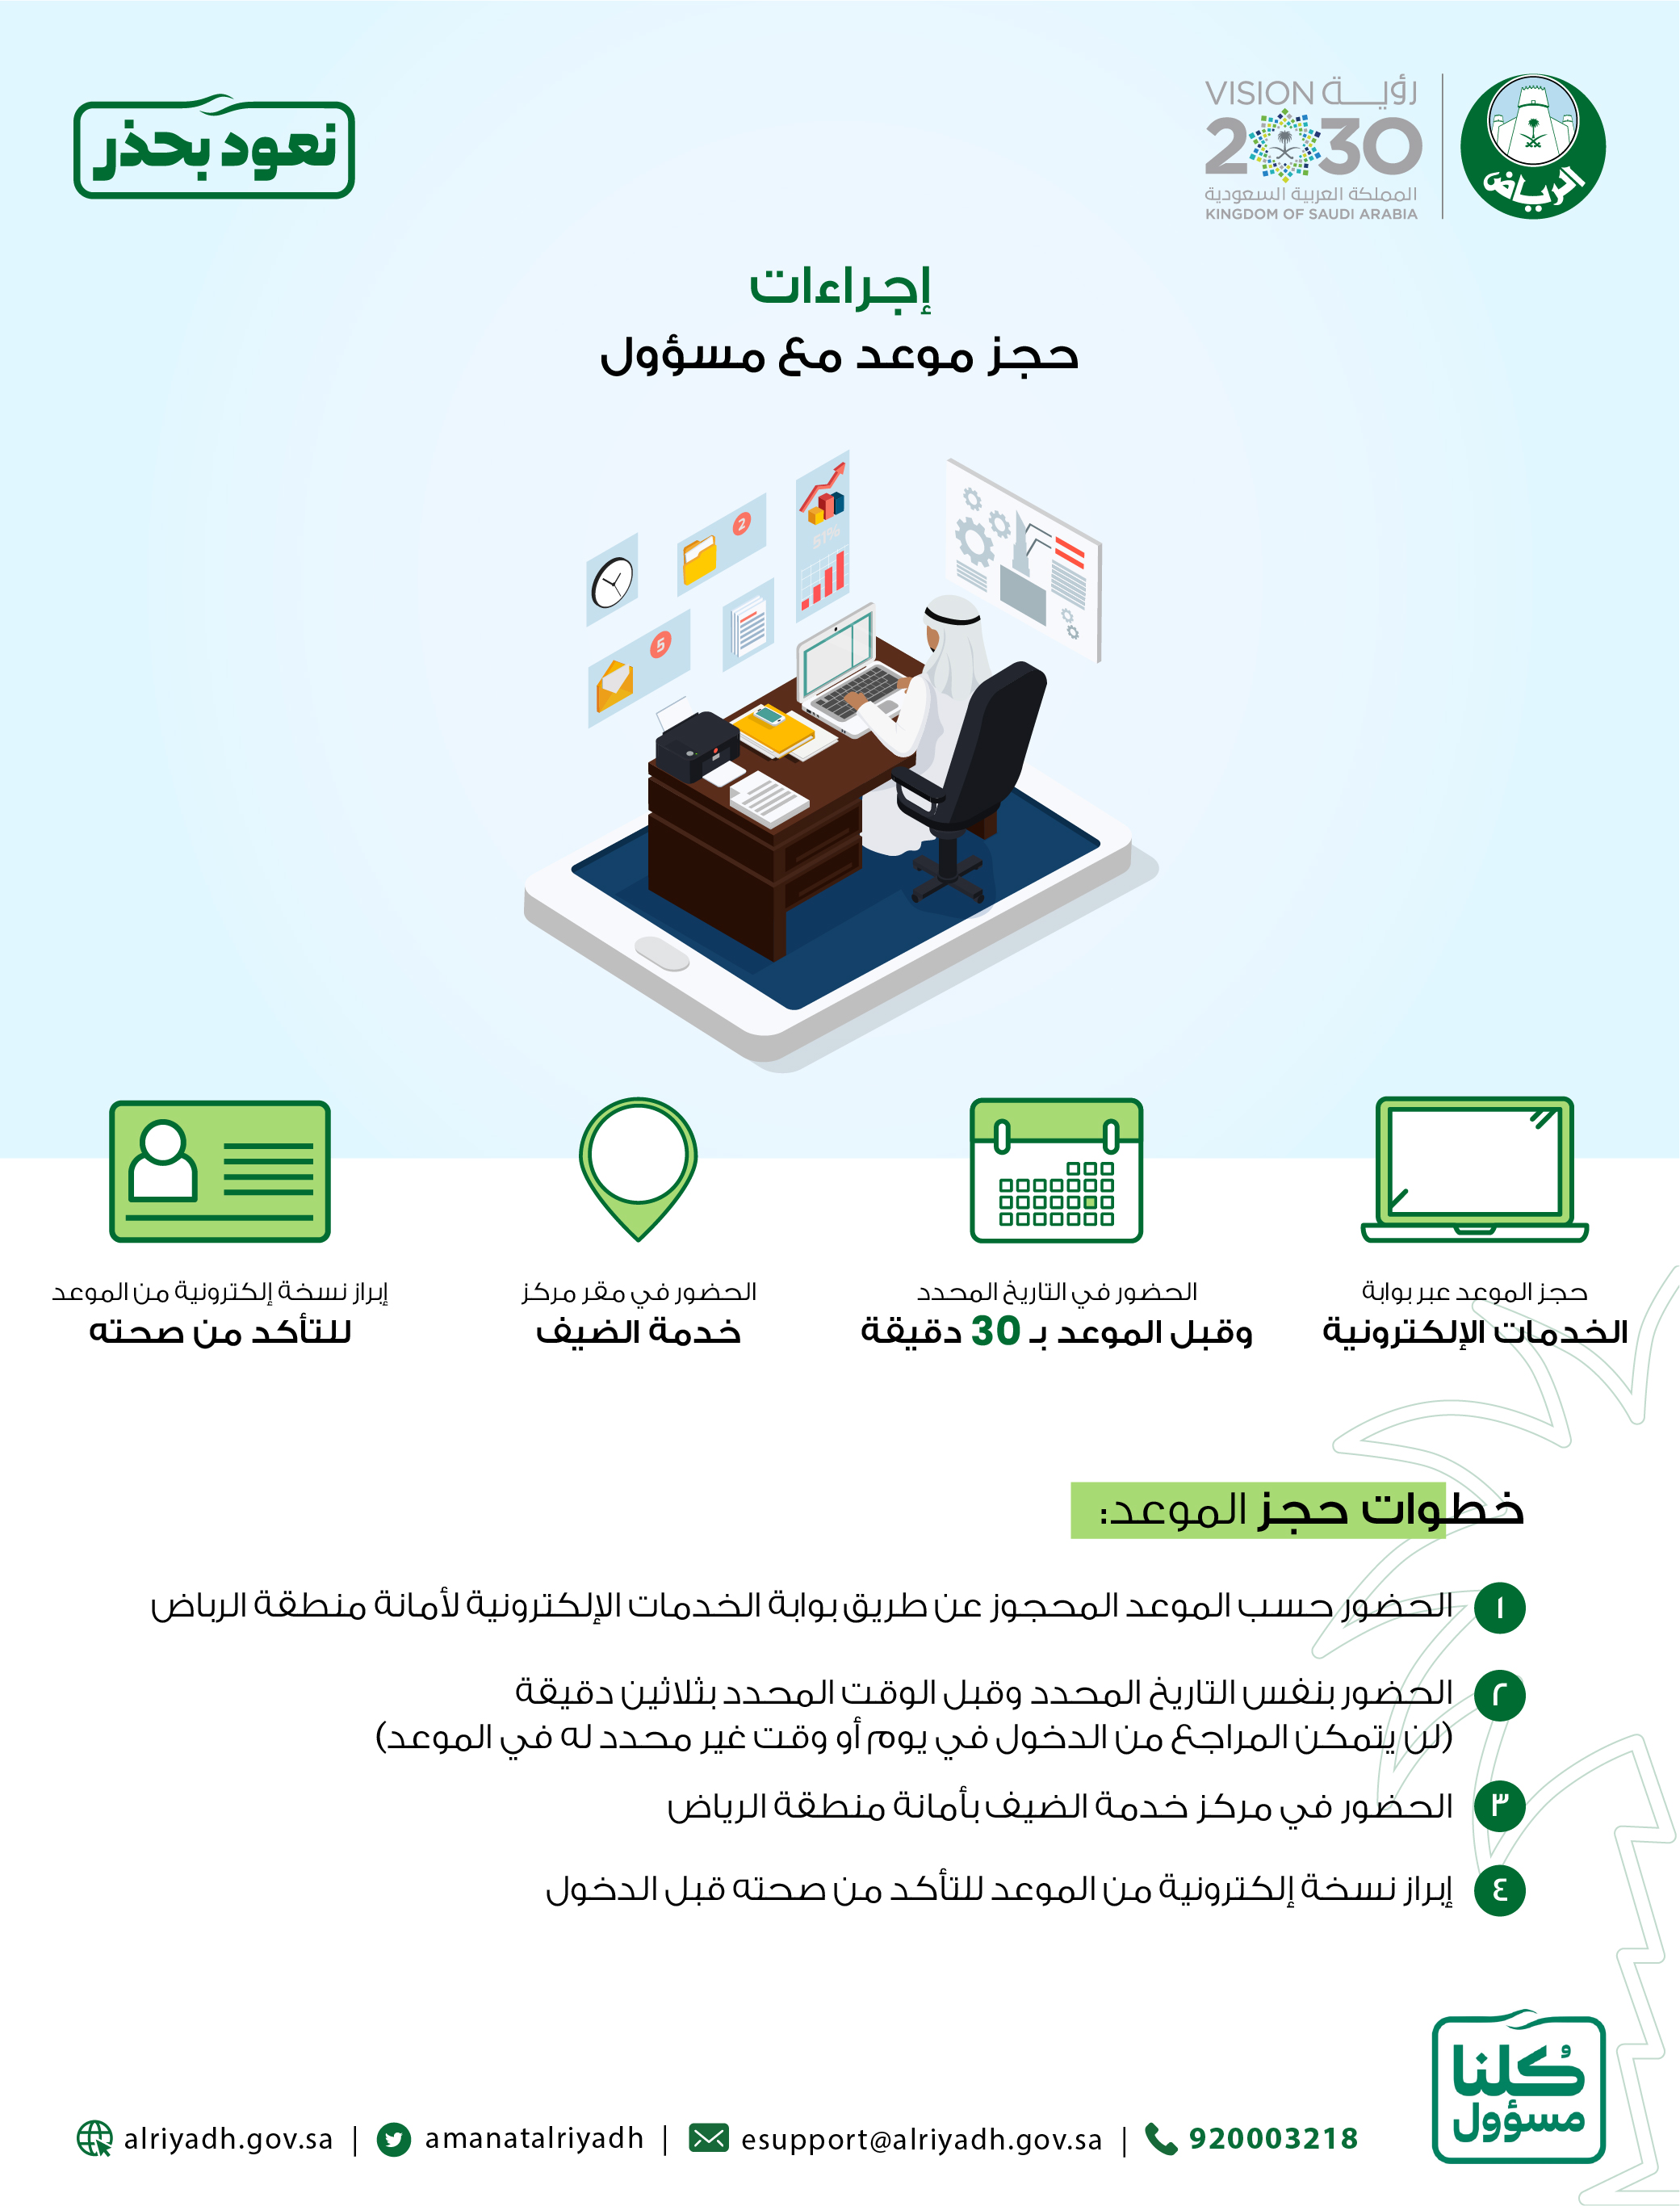 البوابة الالكترونية للخدمات البلدية لأمانة منطقة الرياض